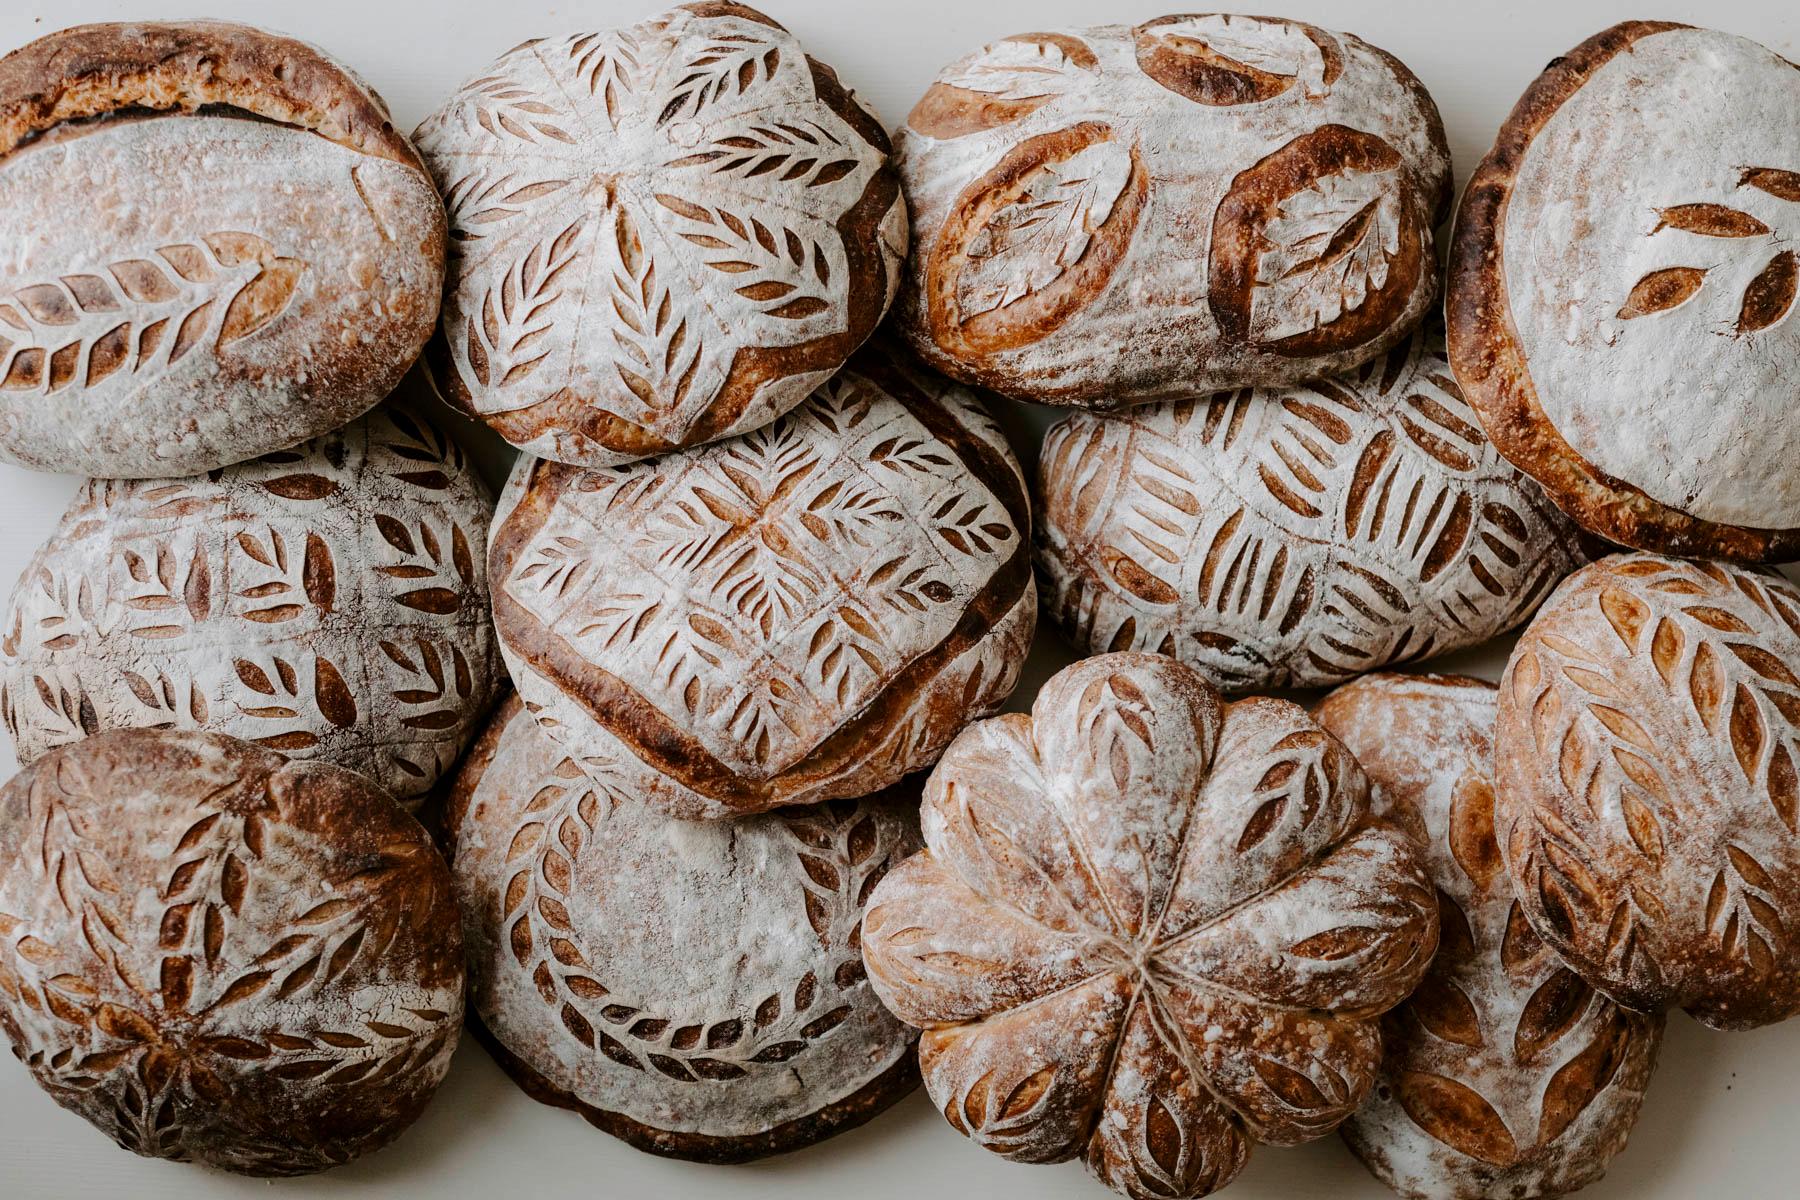 MØNSTRE: Sletmoen pleier å dekorere brødene med finurlige mønstre.